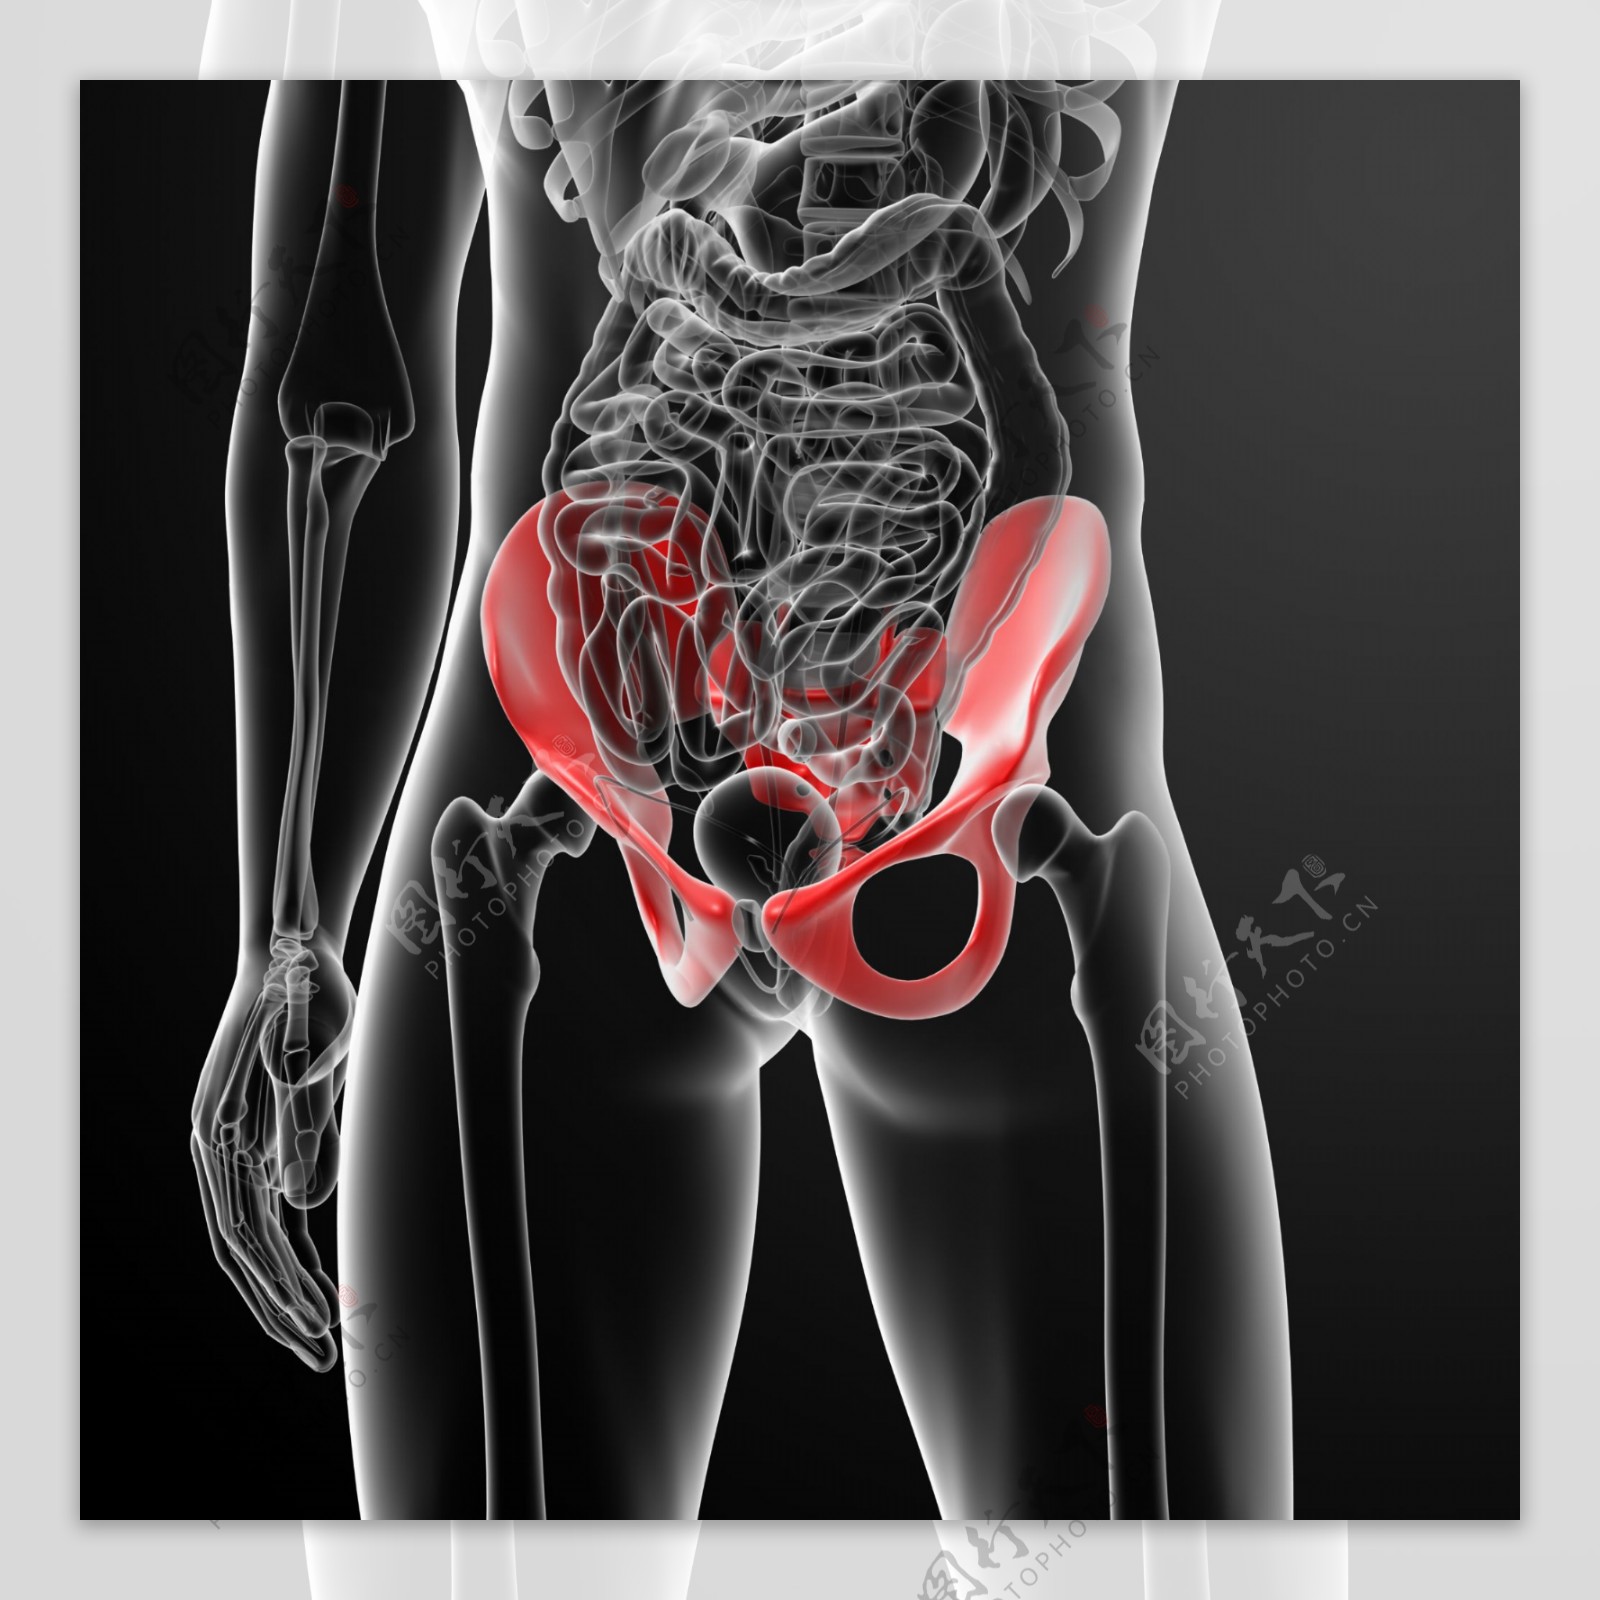 肾脏肠胃器官结构图片